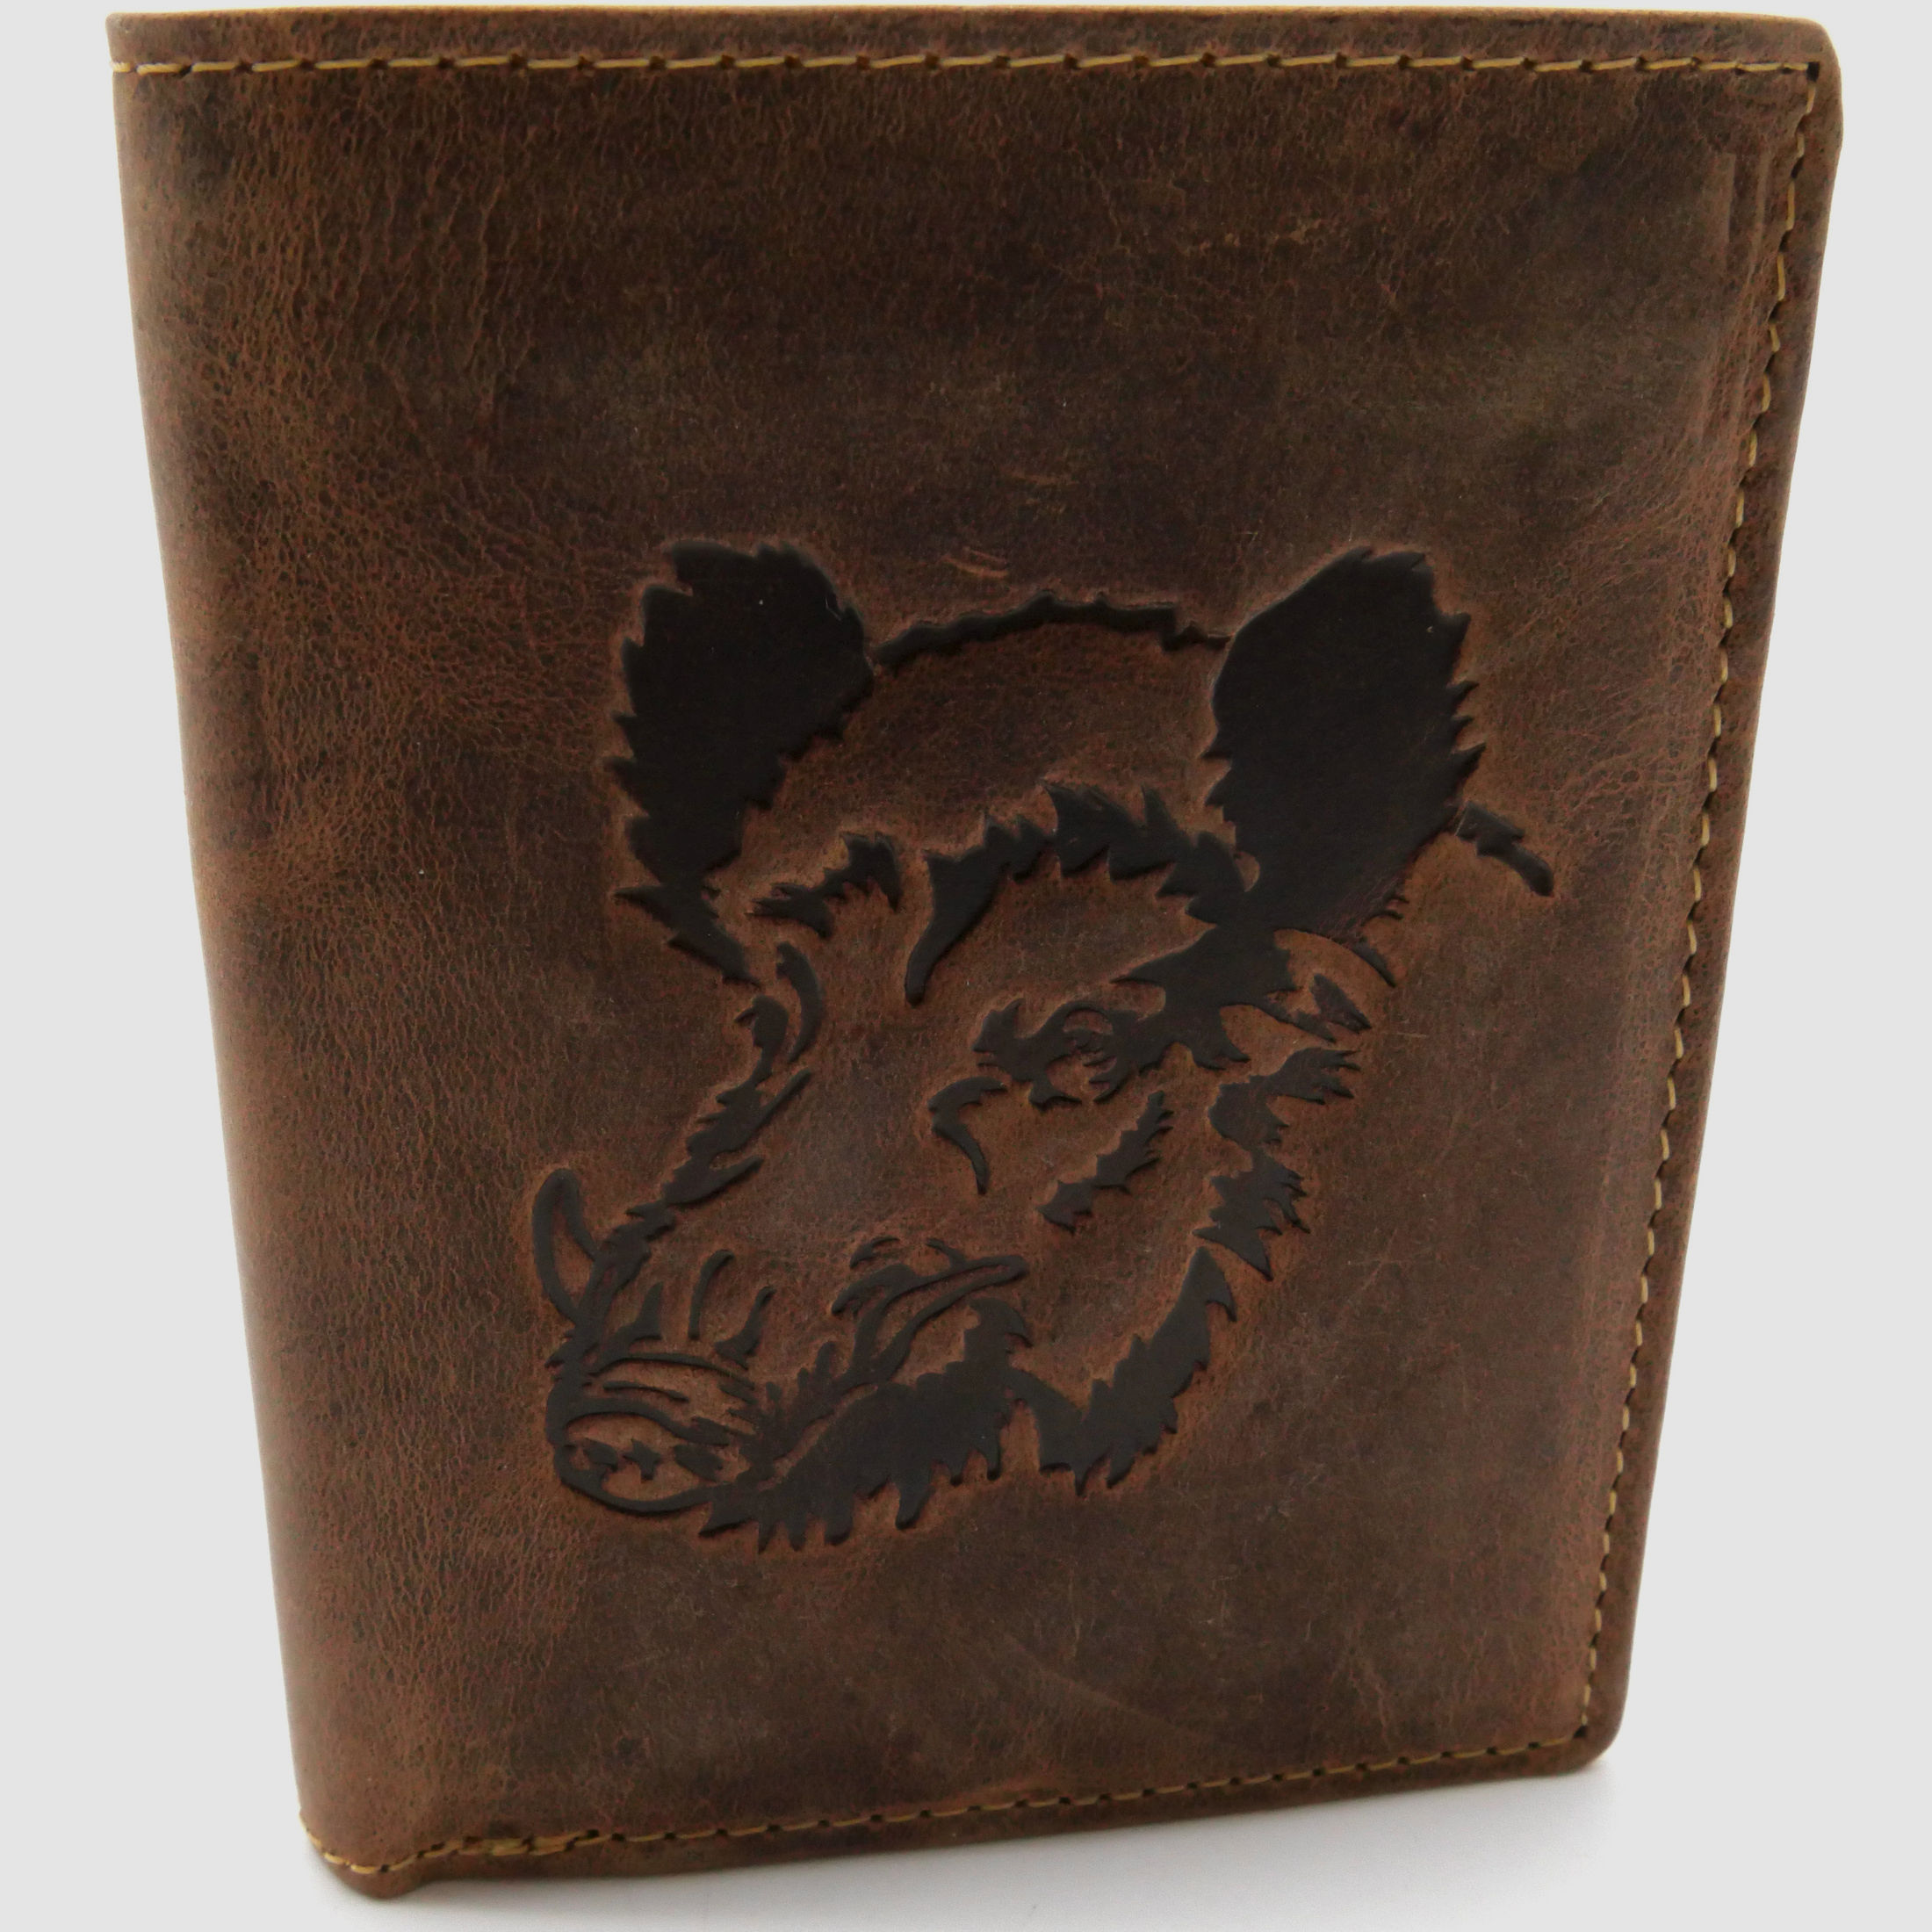 Greenburry Leder Geldbörse braun Vintage Animal Collection Wildschweinkopf 1701-Wild Boar-25